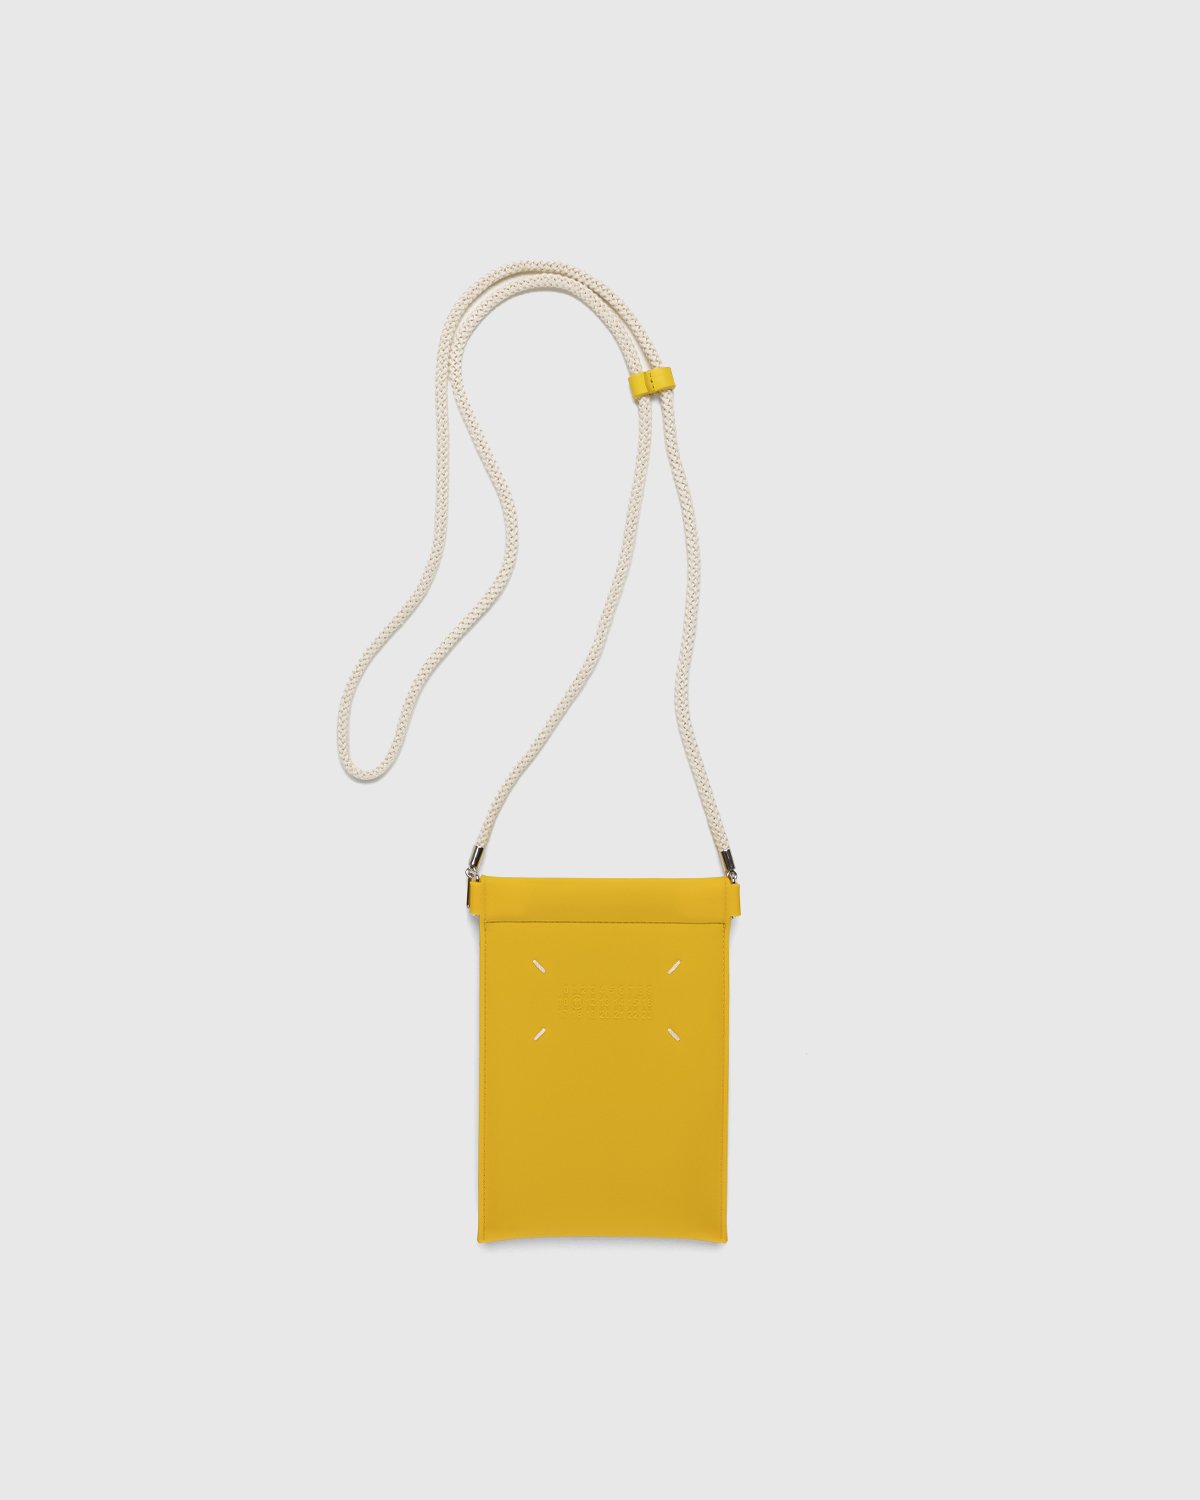 Maison Margiela - Rubber Leather Phone Case Yellow - Lifestyle - Yellow - Image 1